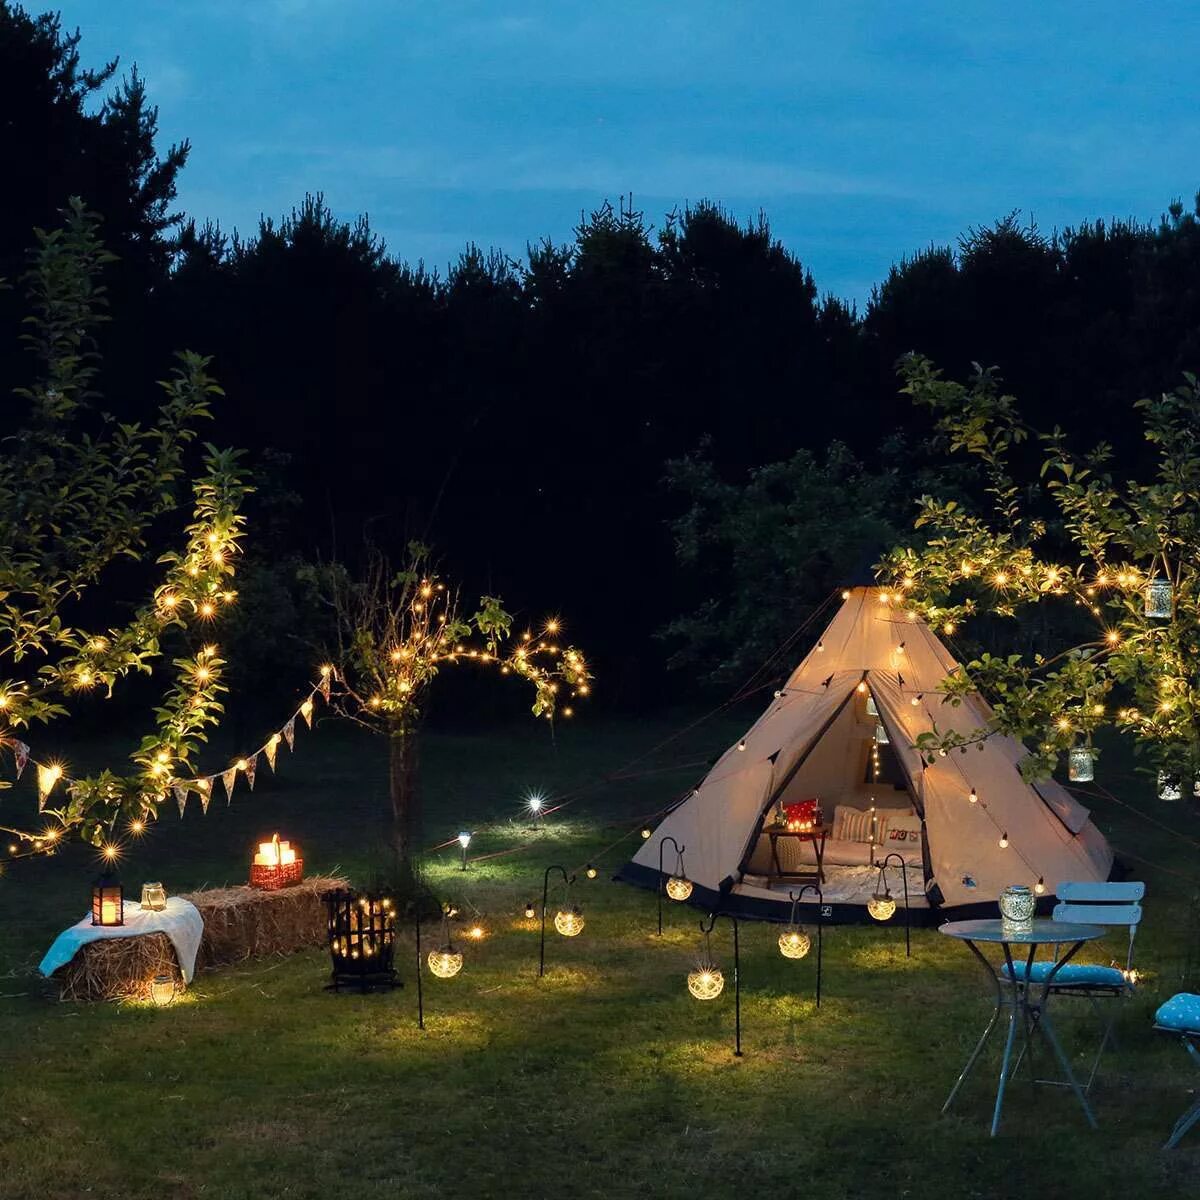 Tent Camping Lights. Solar Camping Light xc50. Уличное освещение кемпинга. Свет для кемпинга. Light camp